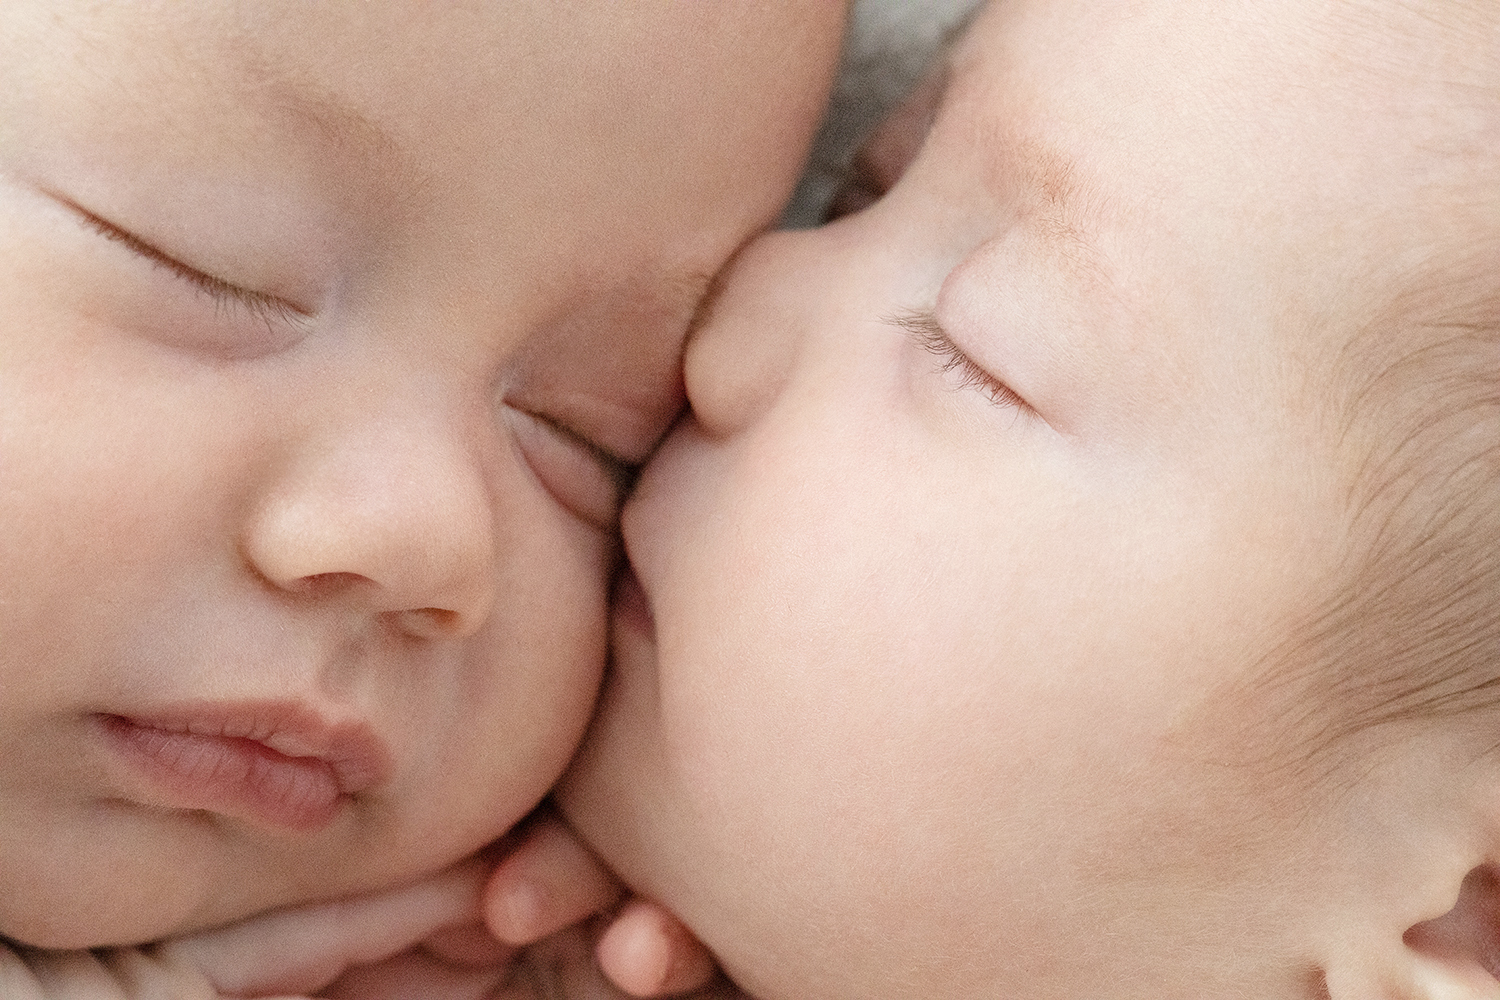 A newborn kisses their sibling.